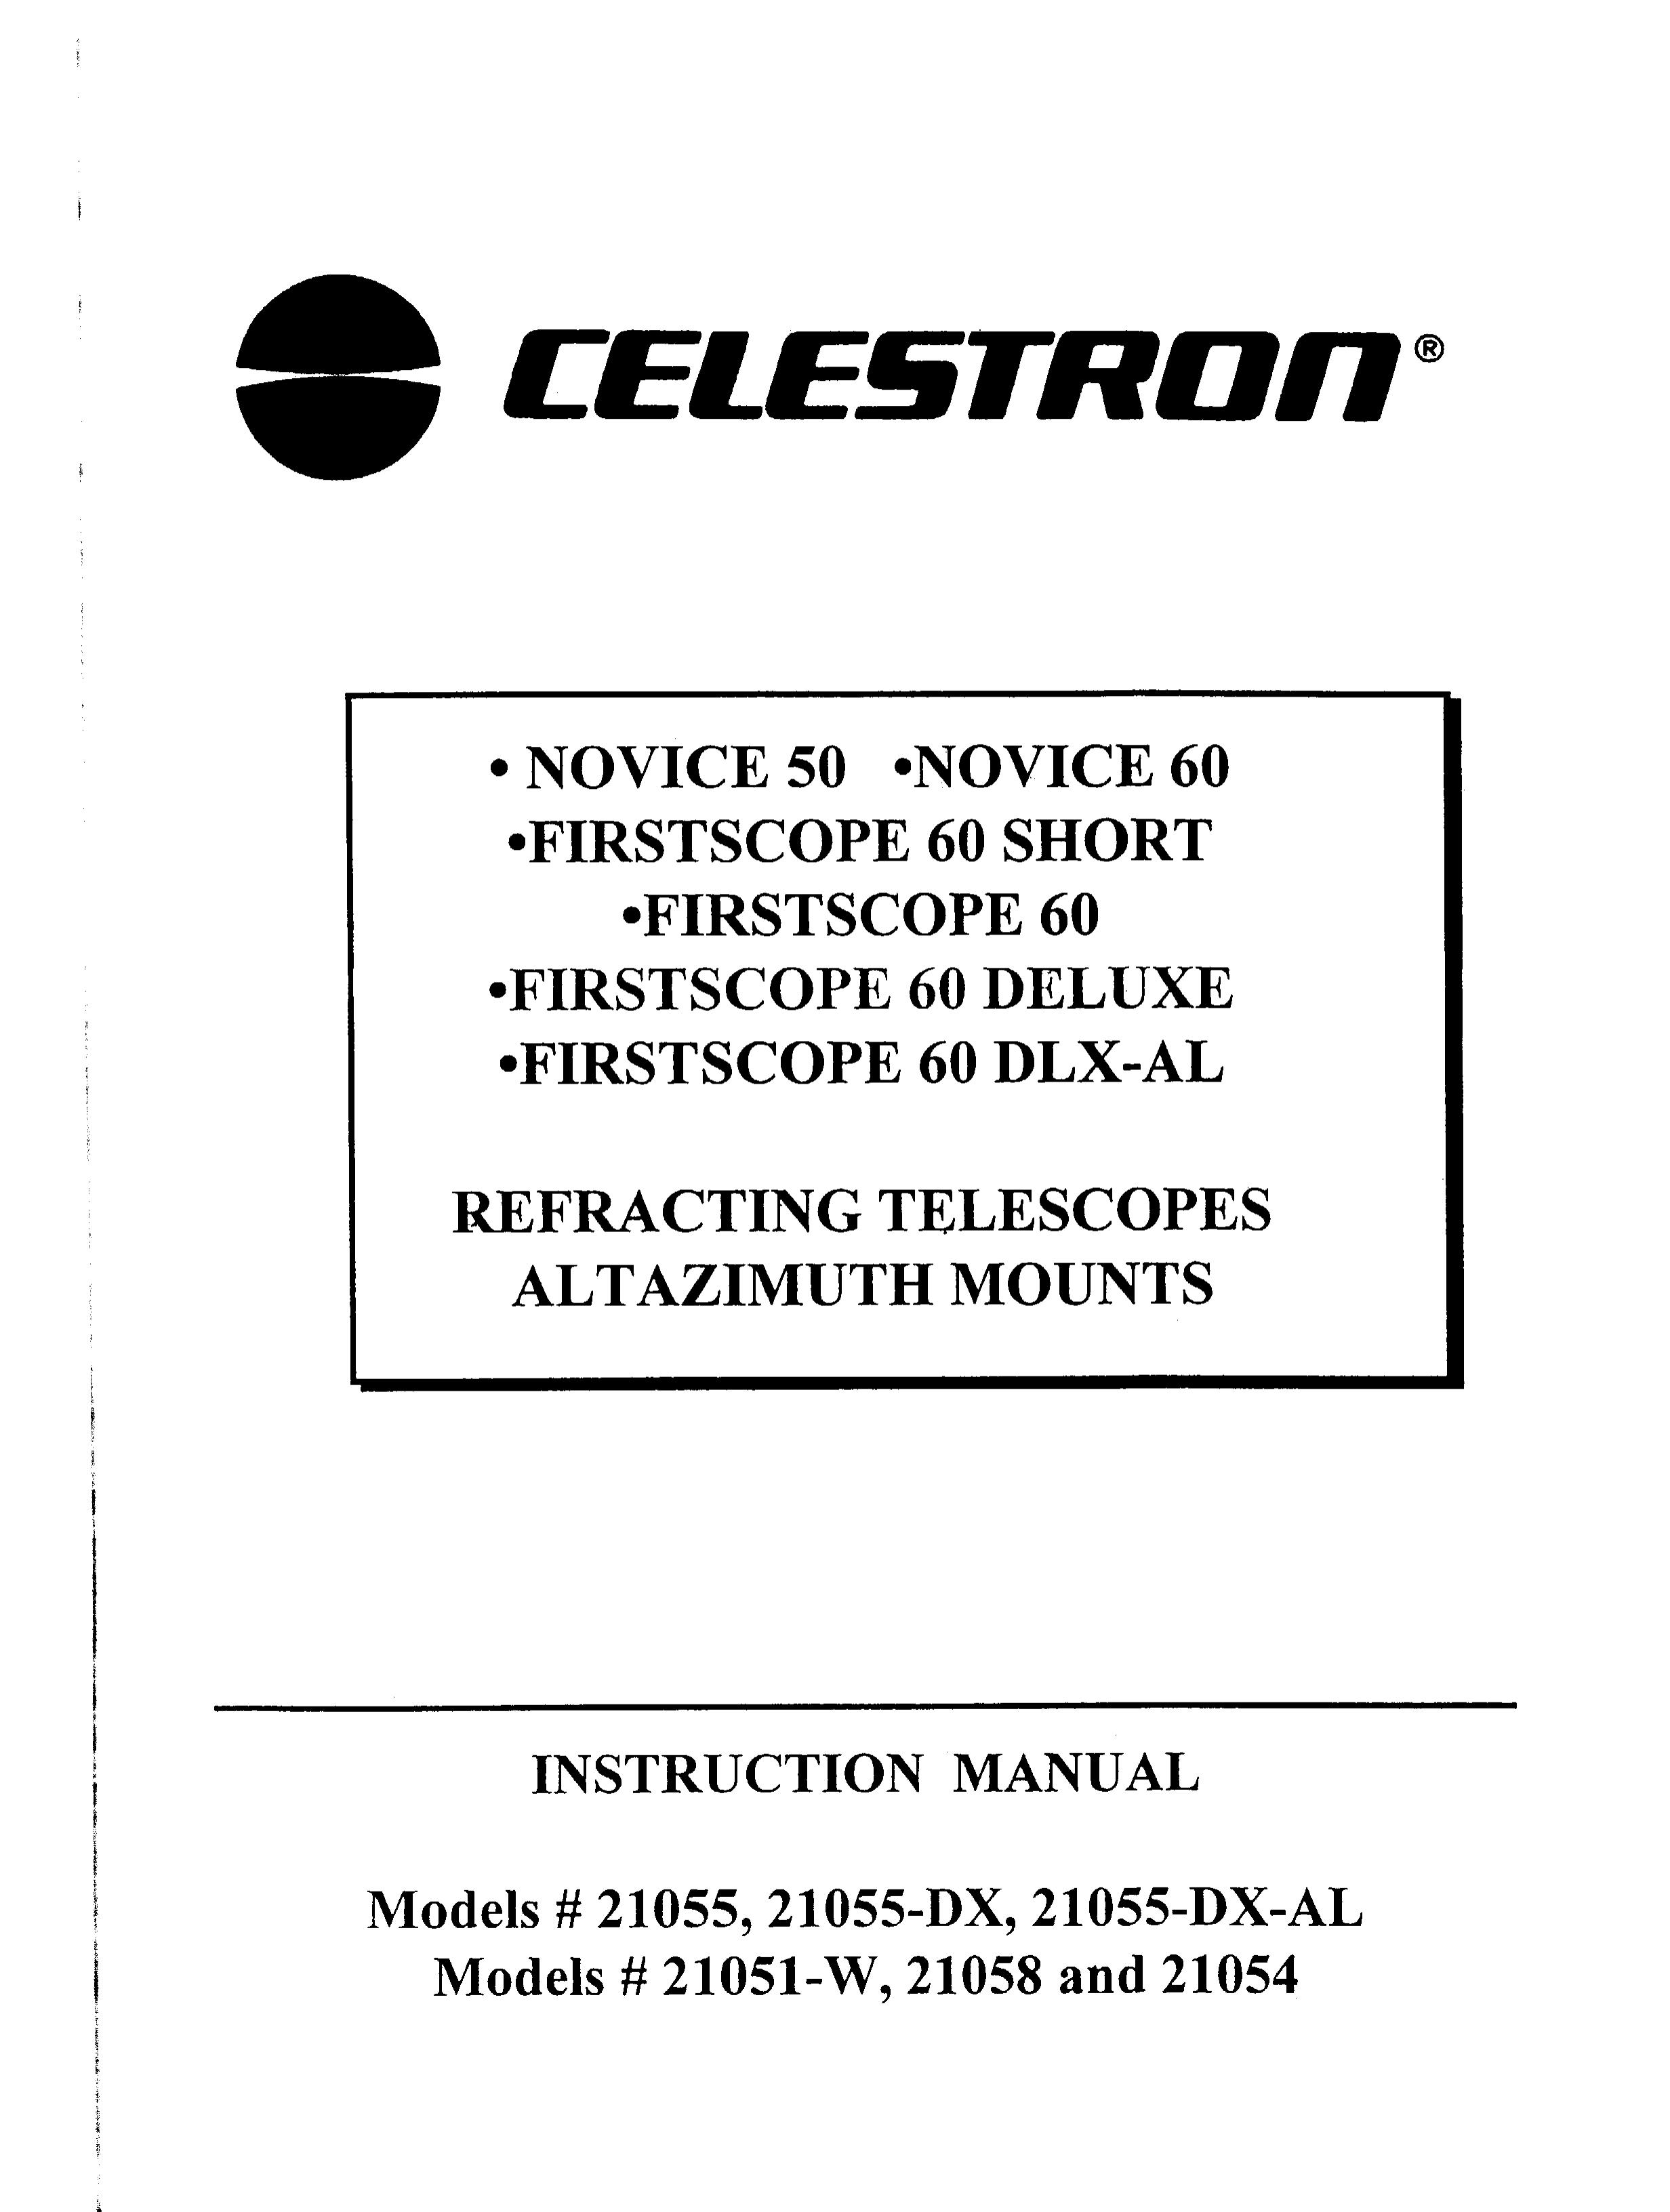 Celestron 21054 Telescope User Manual